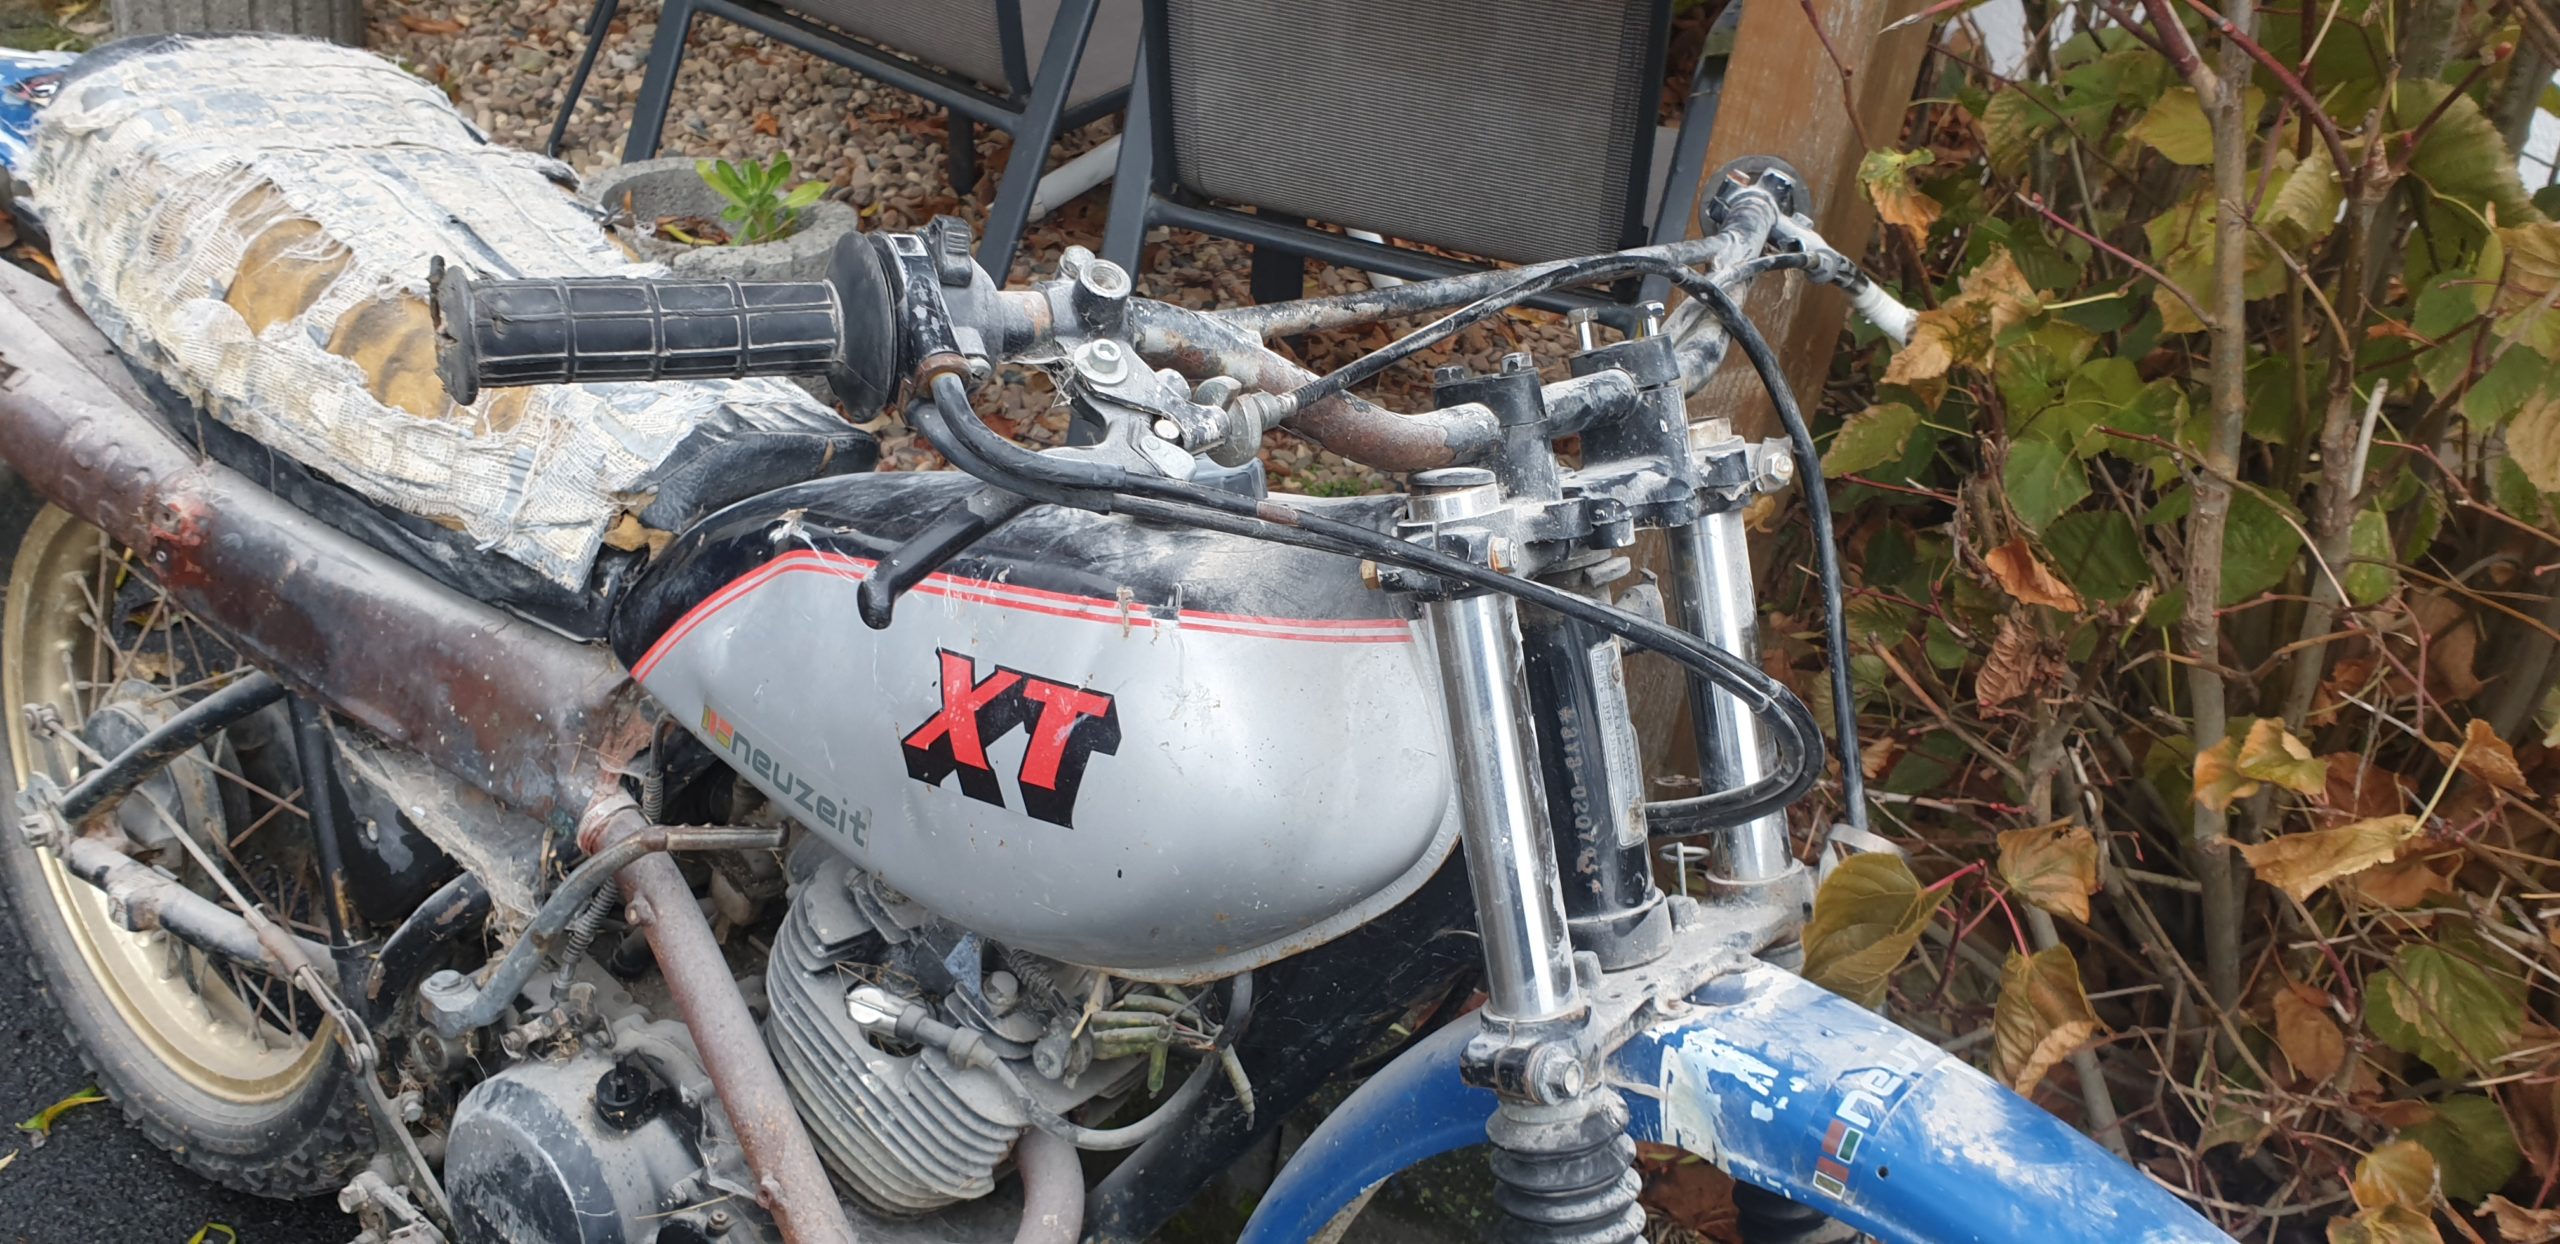 Yamaha xt 250 3Y3 40 scaled